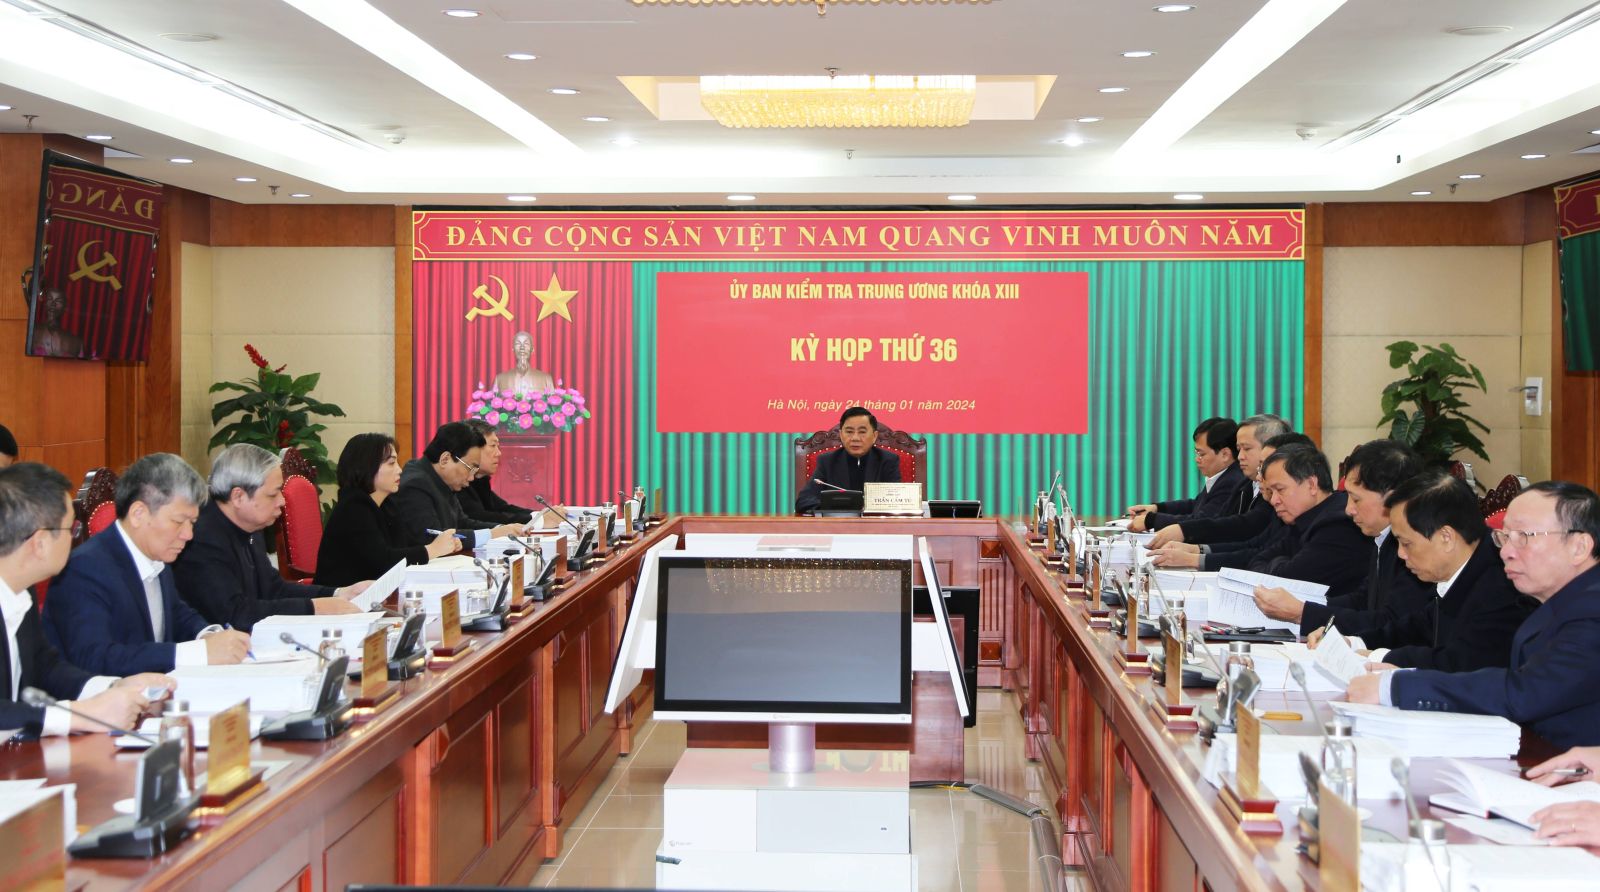 Đề nghị kỷ luật cựu Bí thư Bắc Ninh Nguyễn Nhân Chiến và ông Nguyễn Tử Quỳnh, cựu Chủ tịch UBND tỉnh- Ảnh 1.